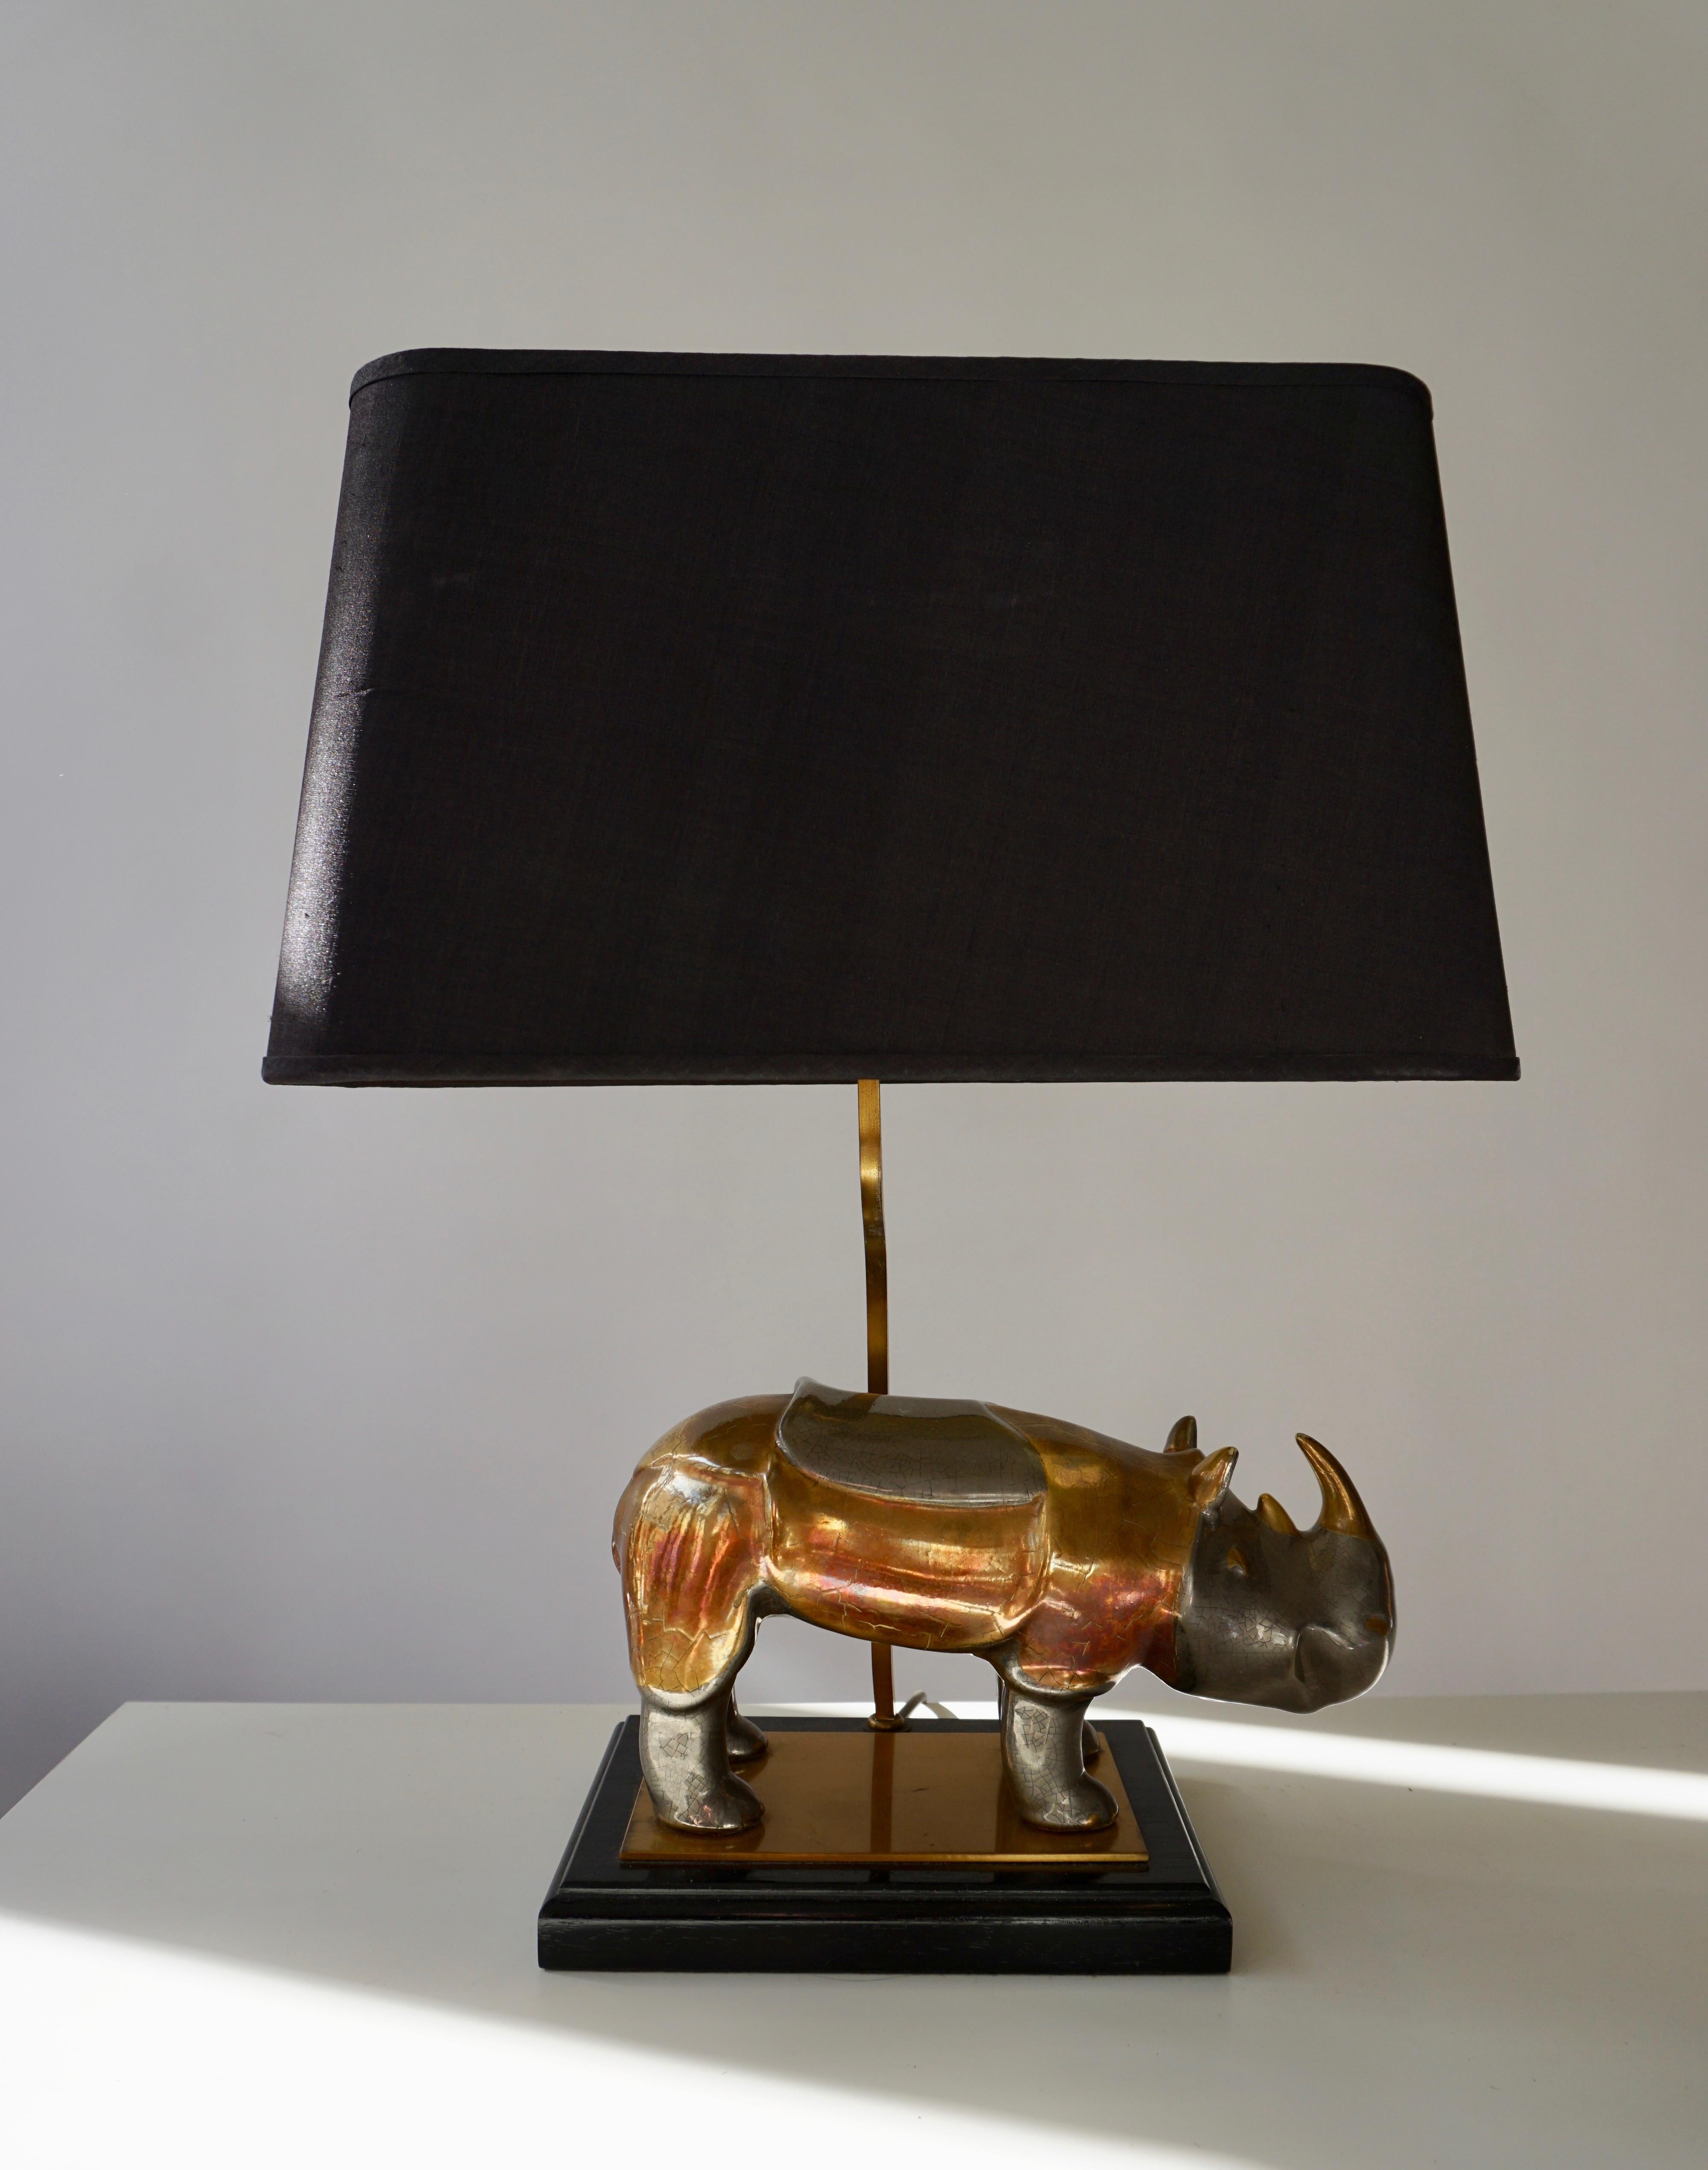 Nashornlampe aus Messing auf einem Holzsockel mit originalem Lampenschirm.
Maße: Höhe 51 cm.
Breite Blende 40 cm.
Tiefenschatten 22 cm.
Breite Nashorn29 cm, Höhe 18 cm.
0eine E27-Glühbirne.